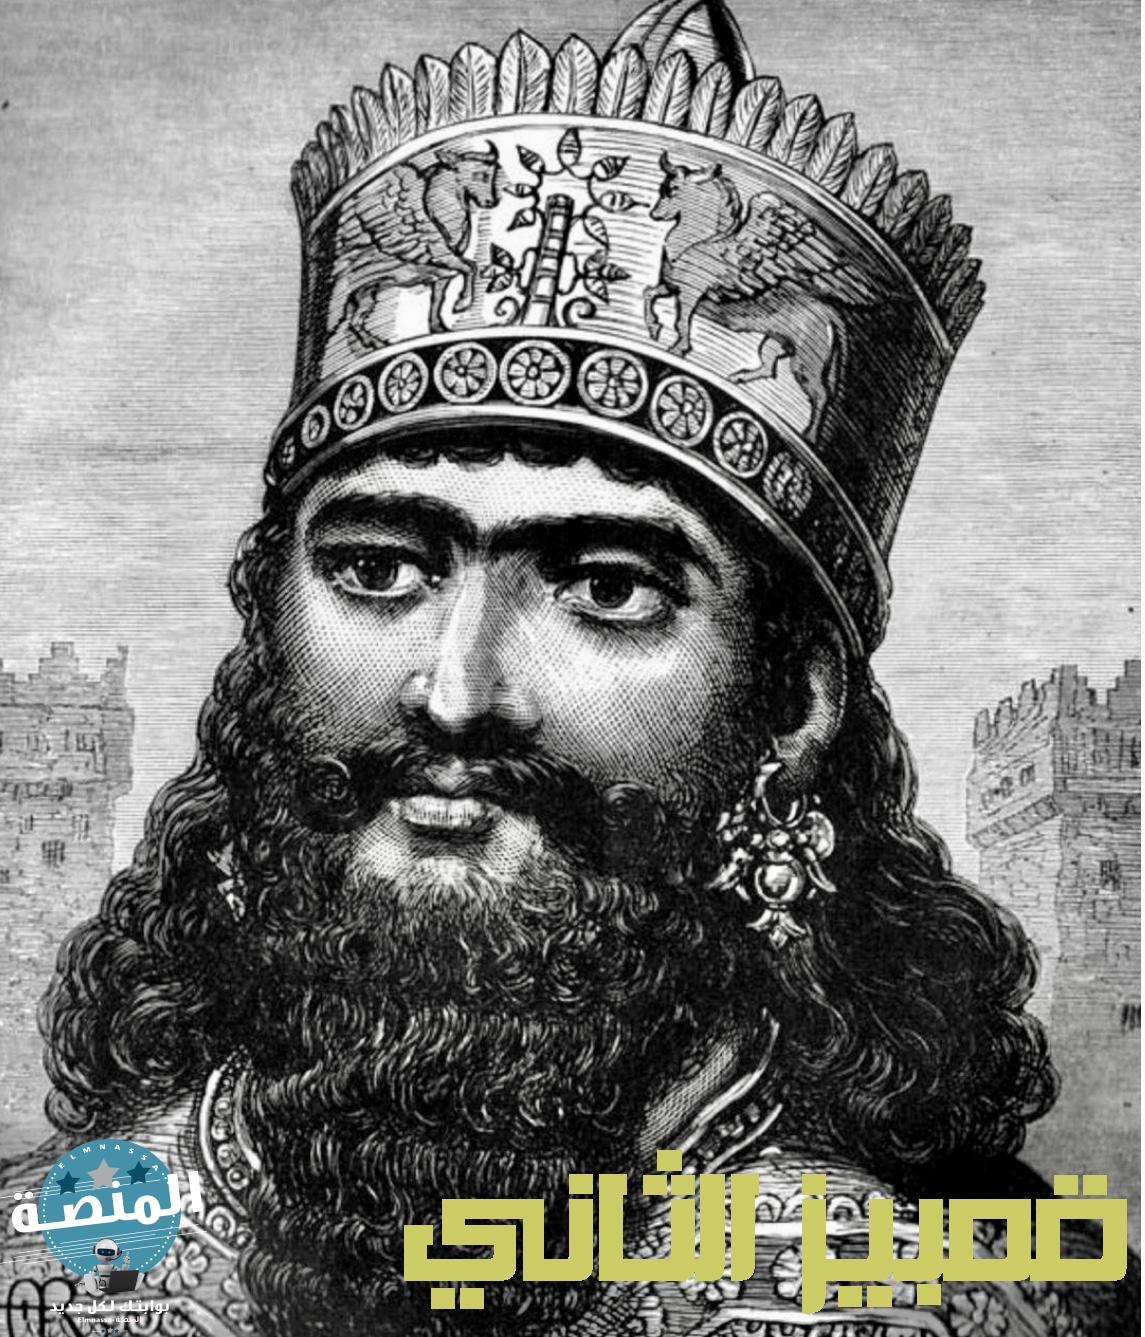 قمبيز الثاني الملك الفارسي الذي قتل نفسه بالخطأ